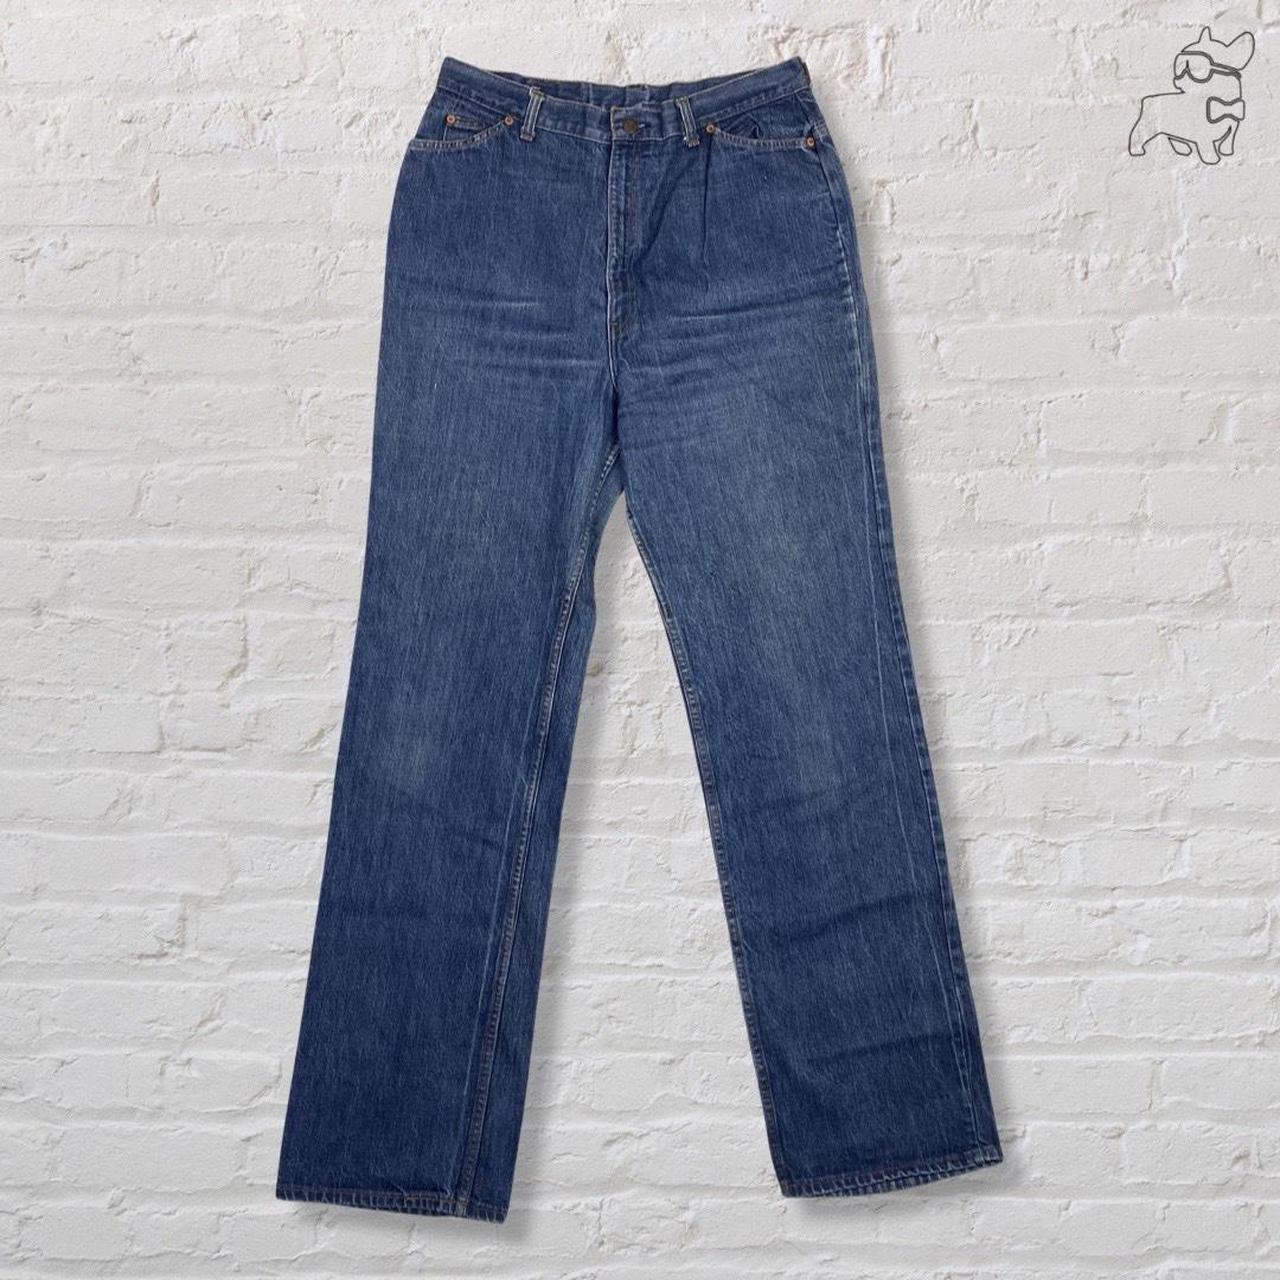 Levi's blue jeans high waist regular straight fit... - Depop